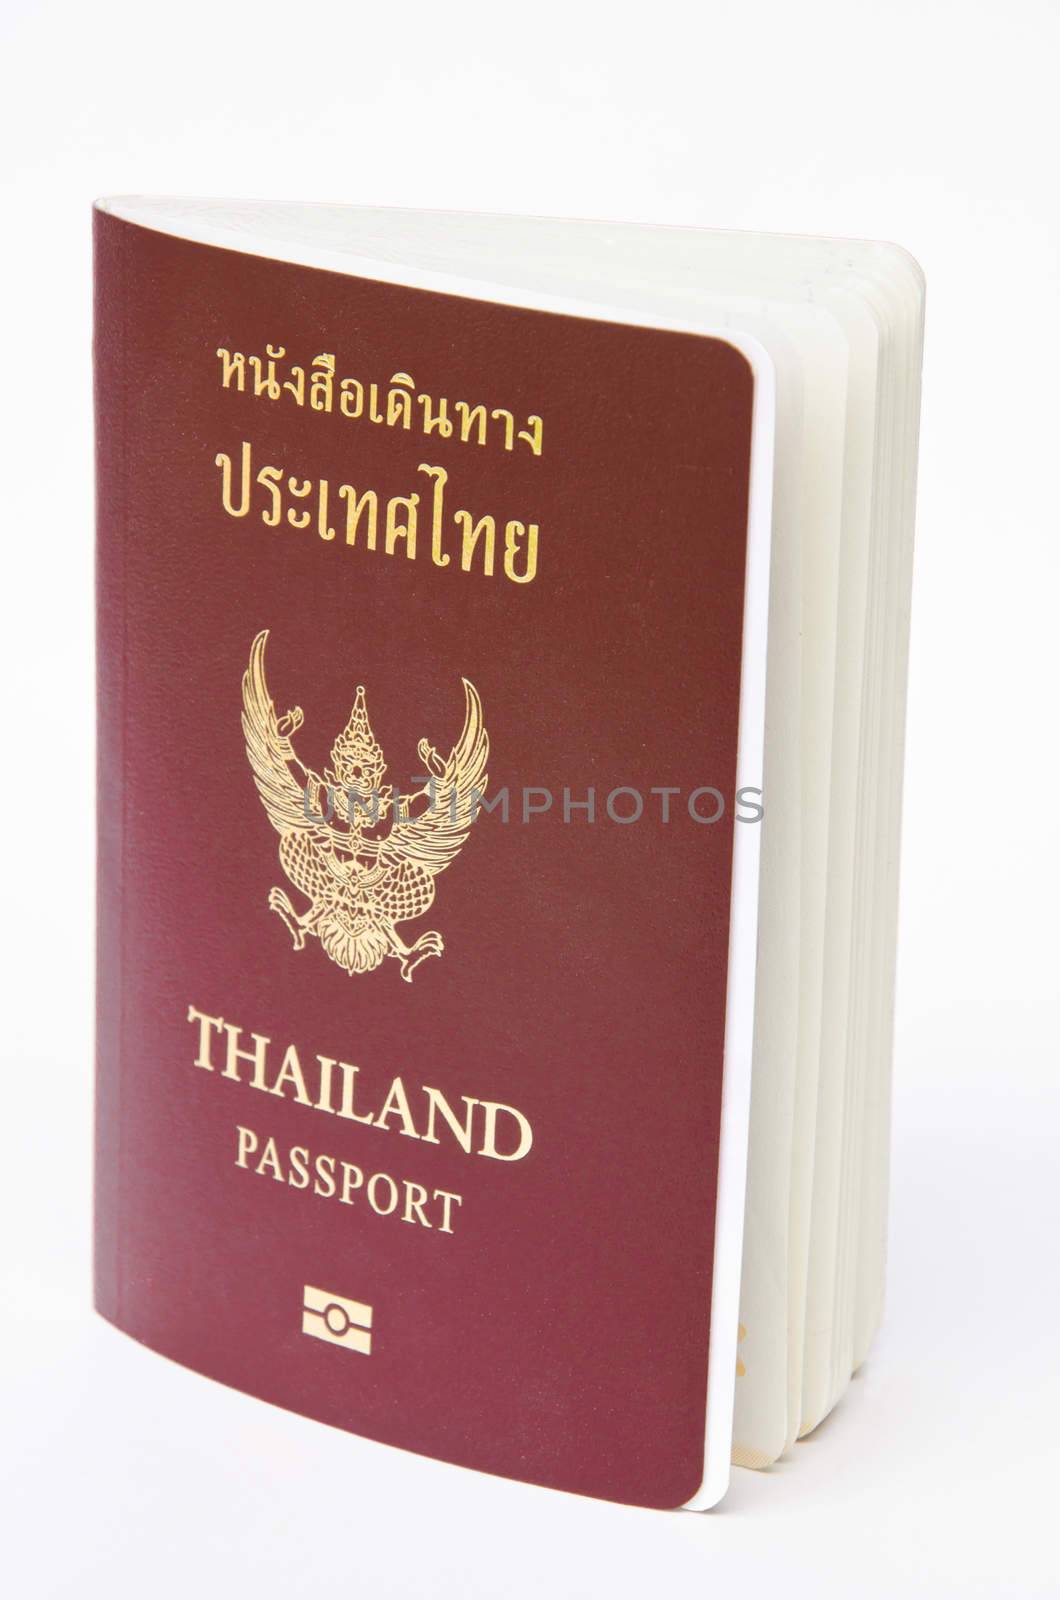 Thailand passport by Gamjai